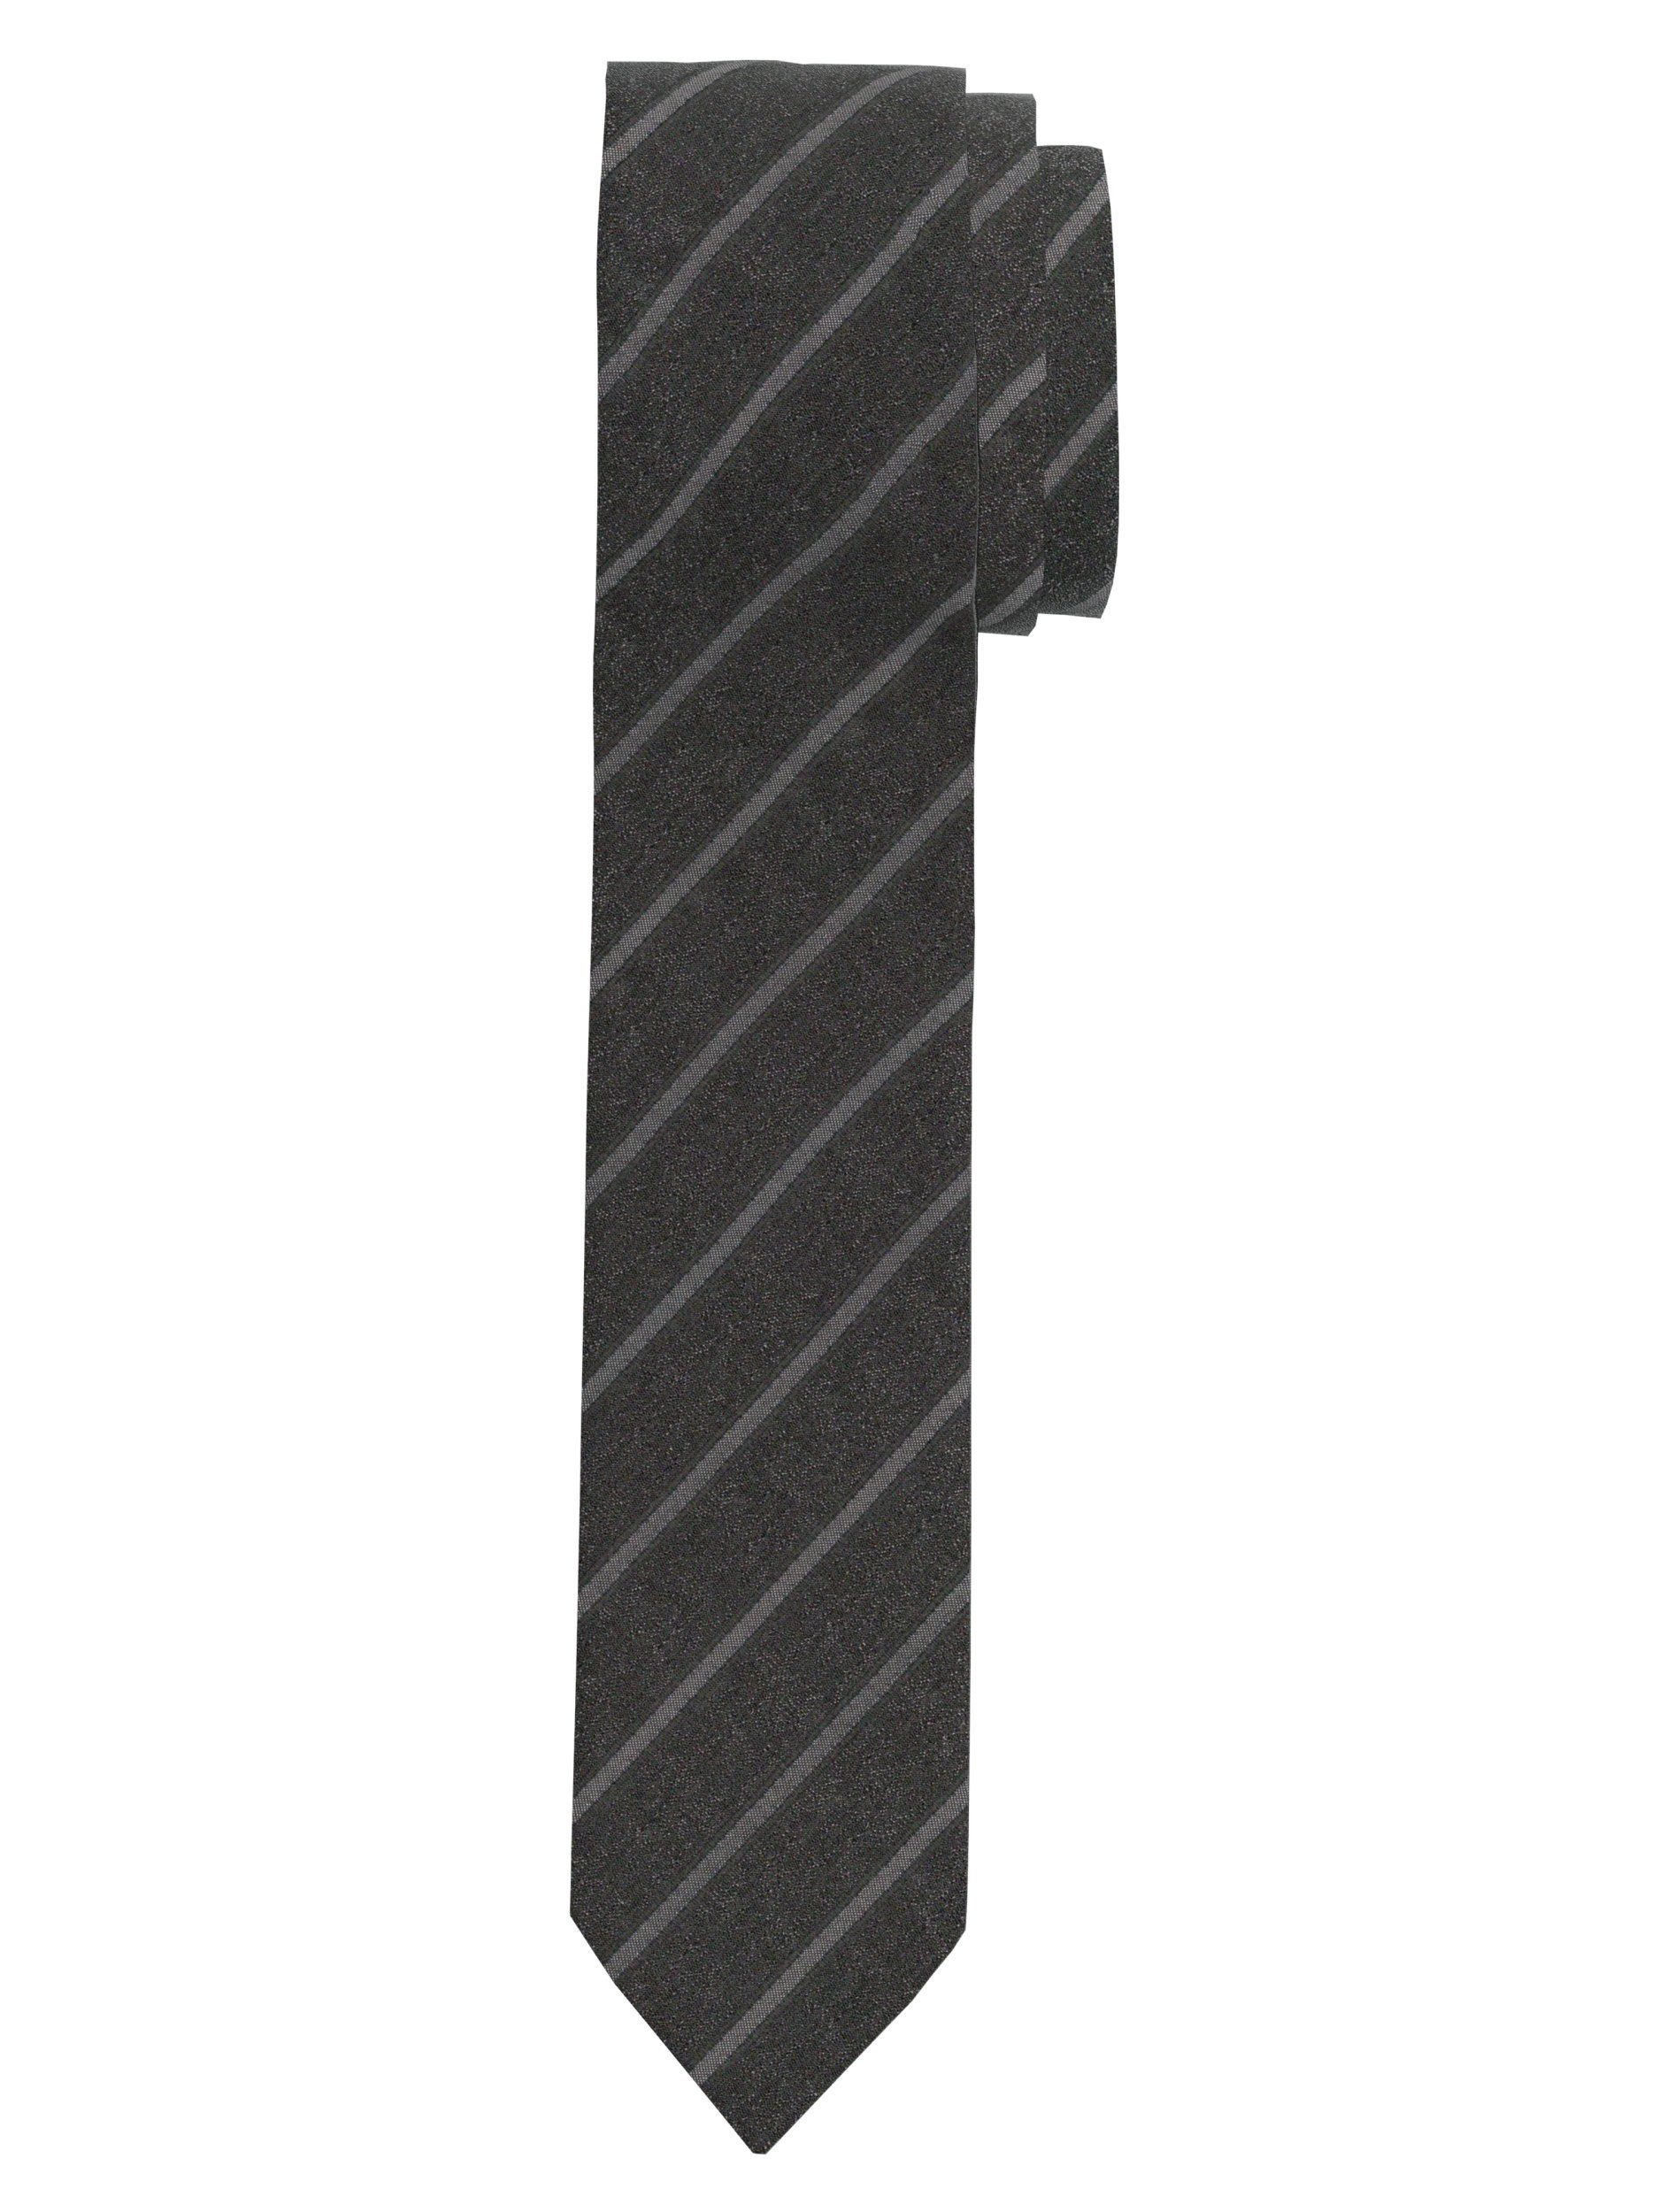 OLYMP Krawatte 1738/00 Krawatten